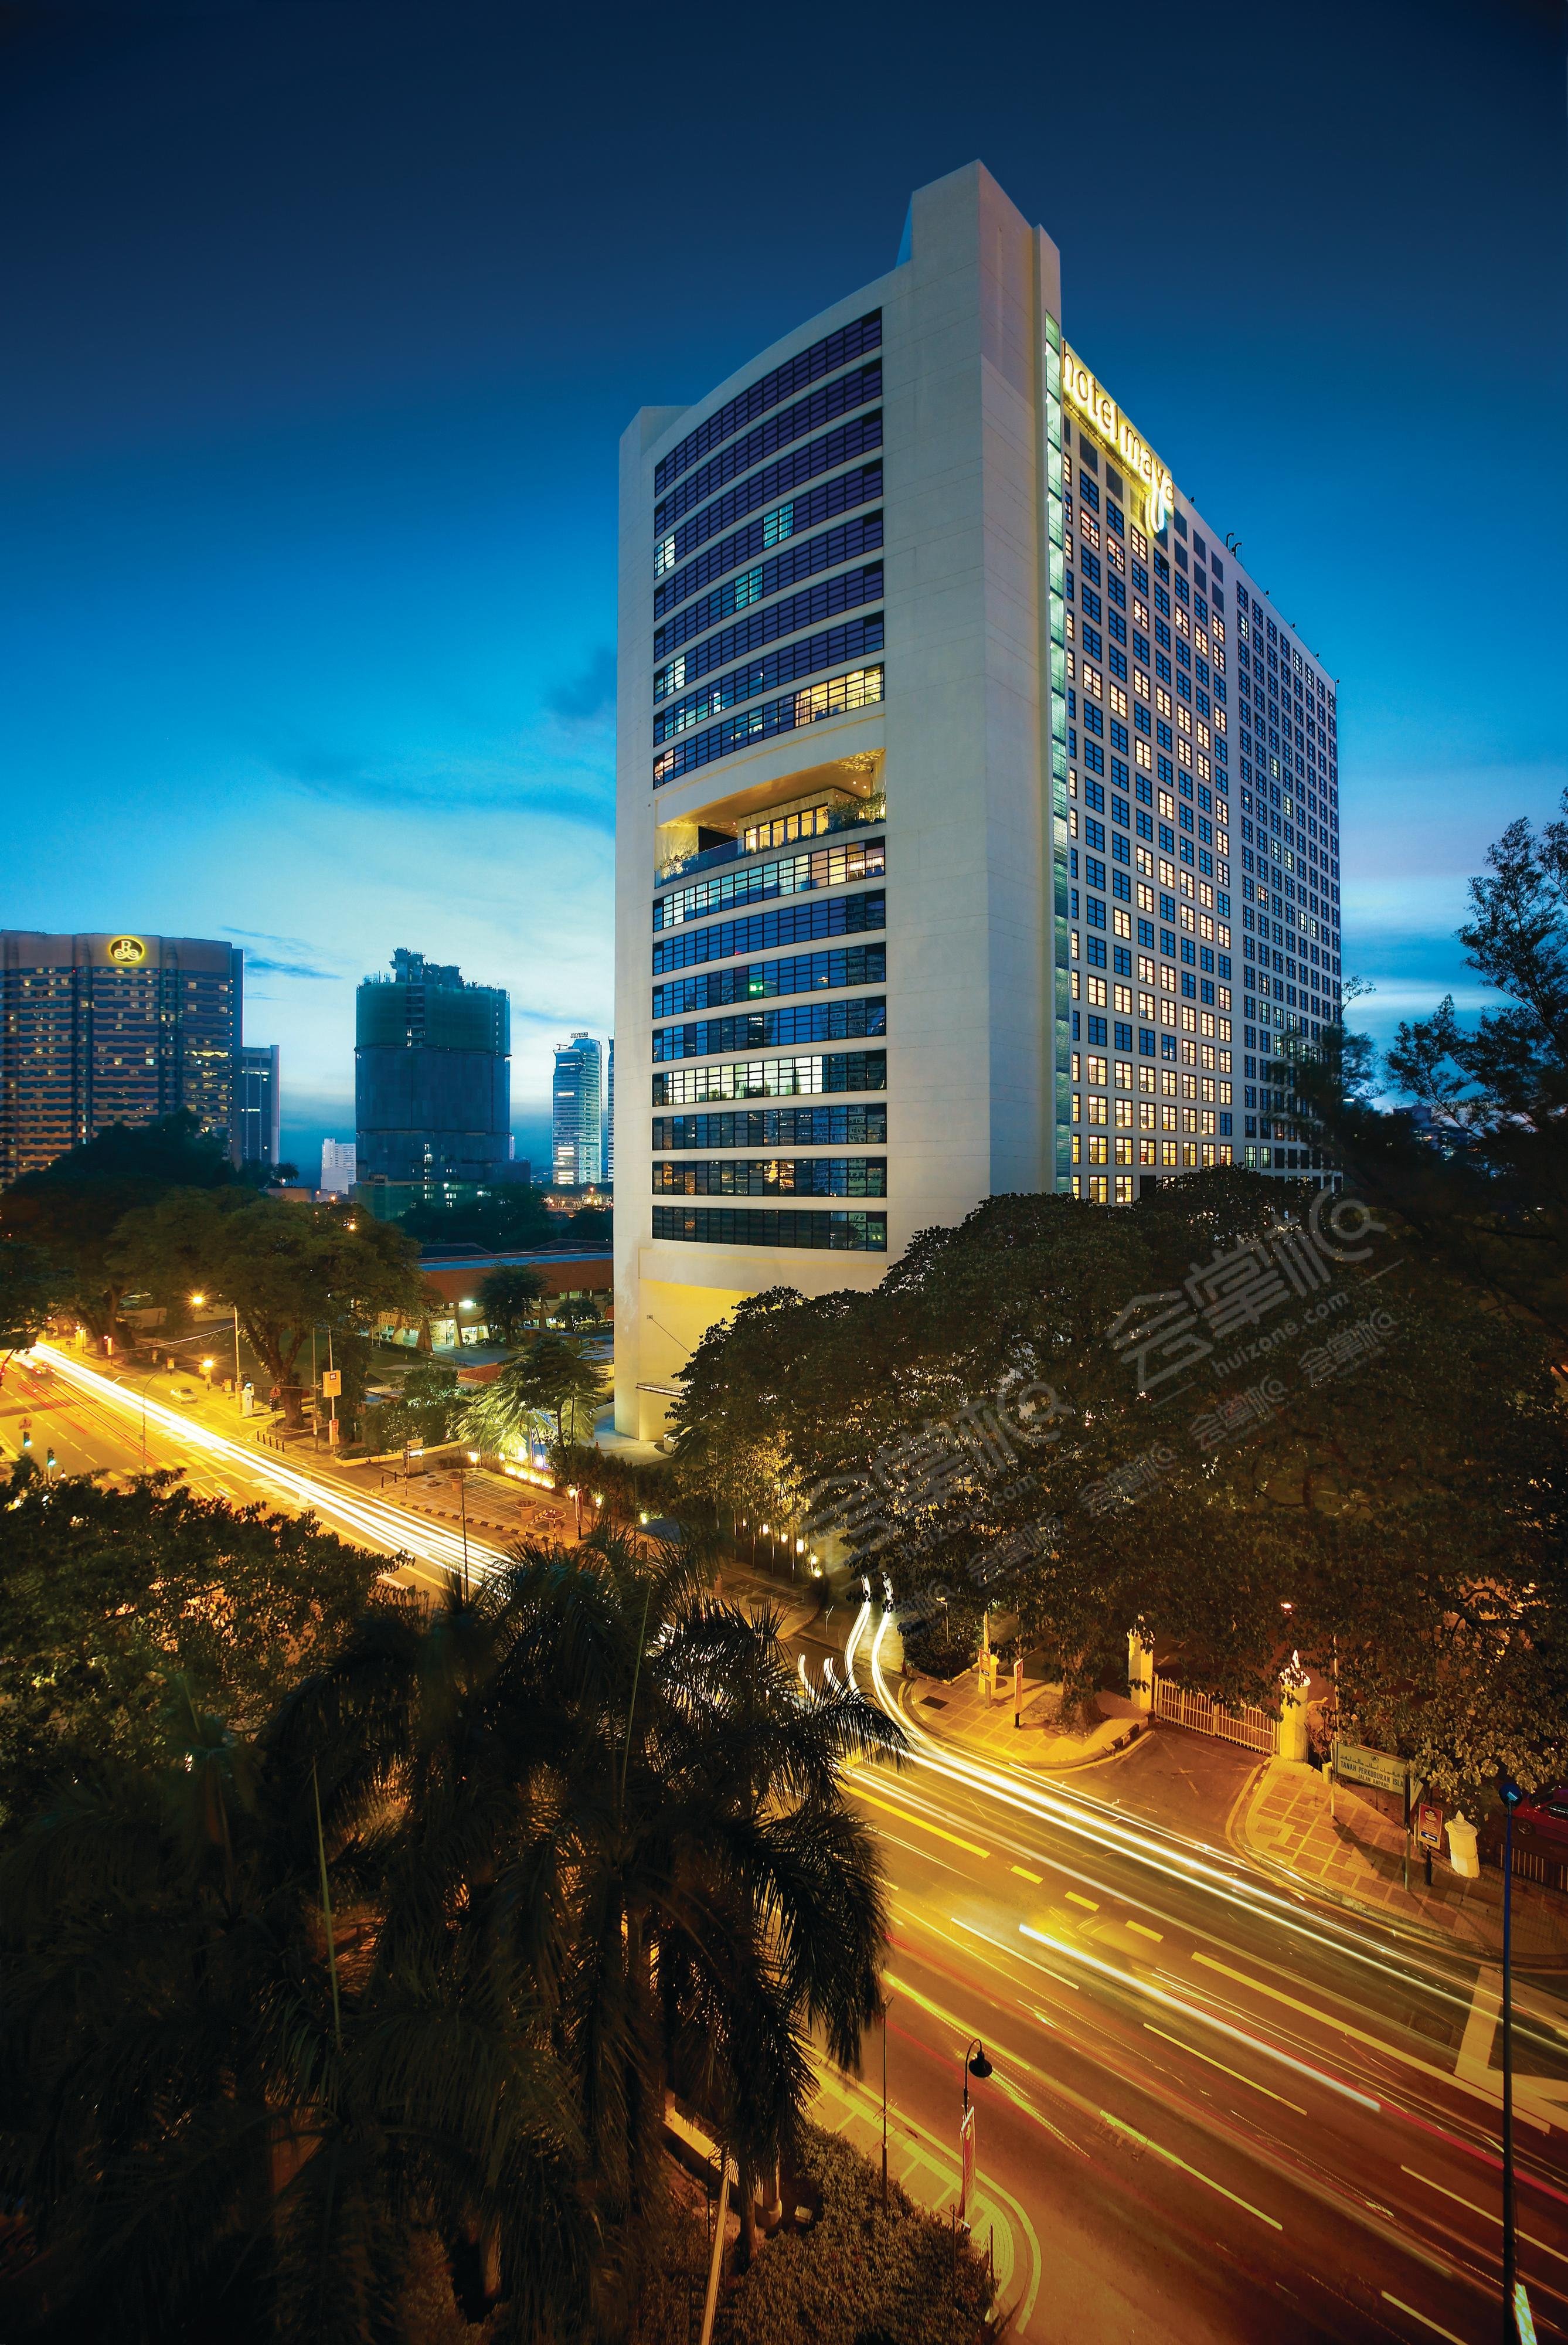 吉隆坡五星级酒店最大容纳400人的会议场地|吉隆坡玛雅酒店(Hotel Maya Kuala Lumpur)的价格与联系方式